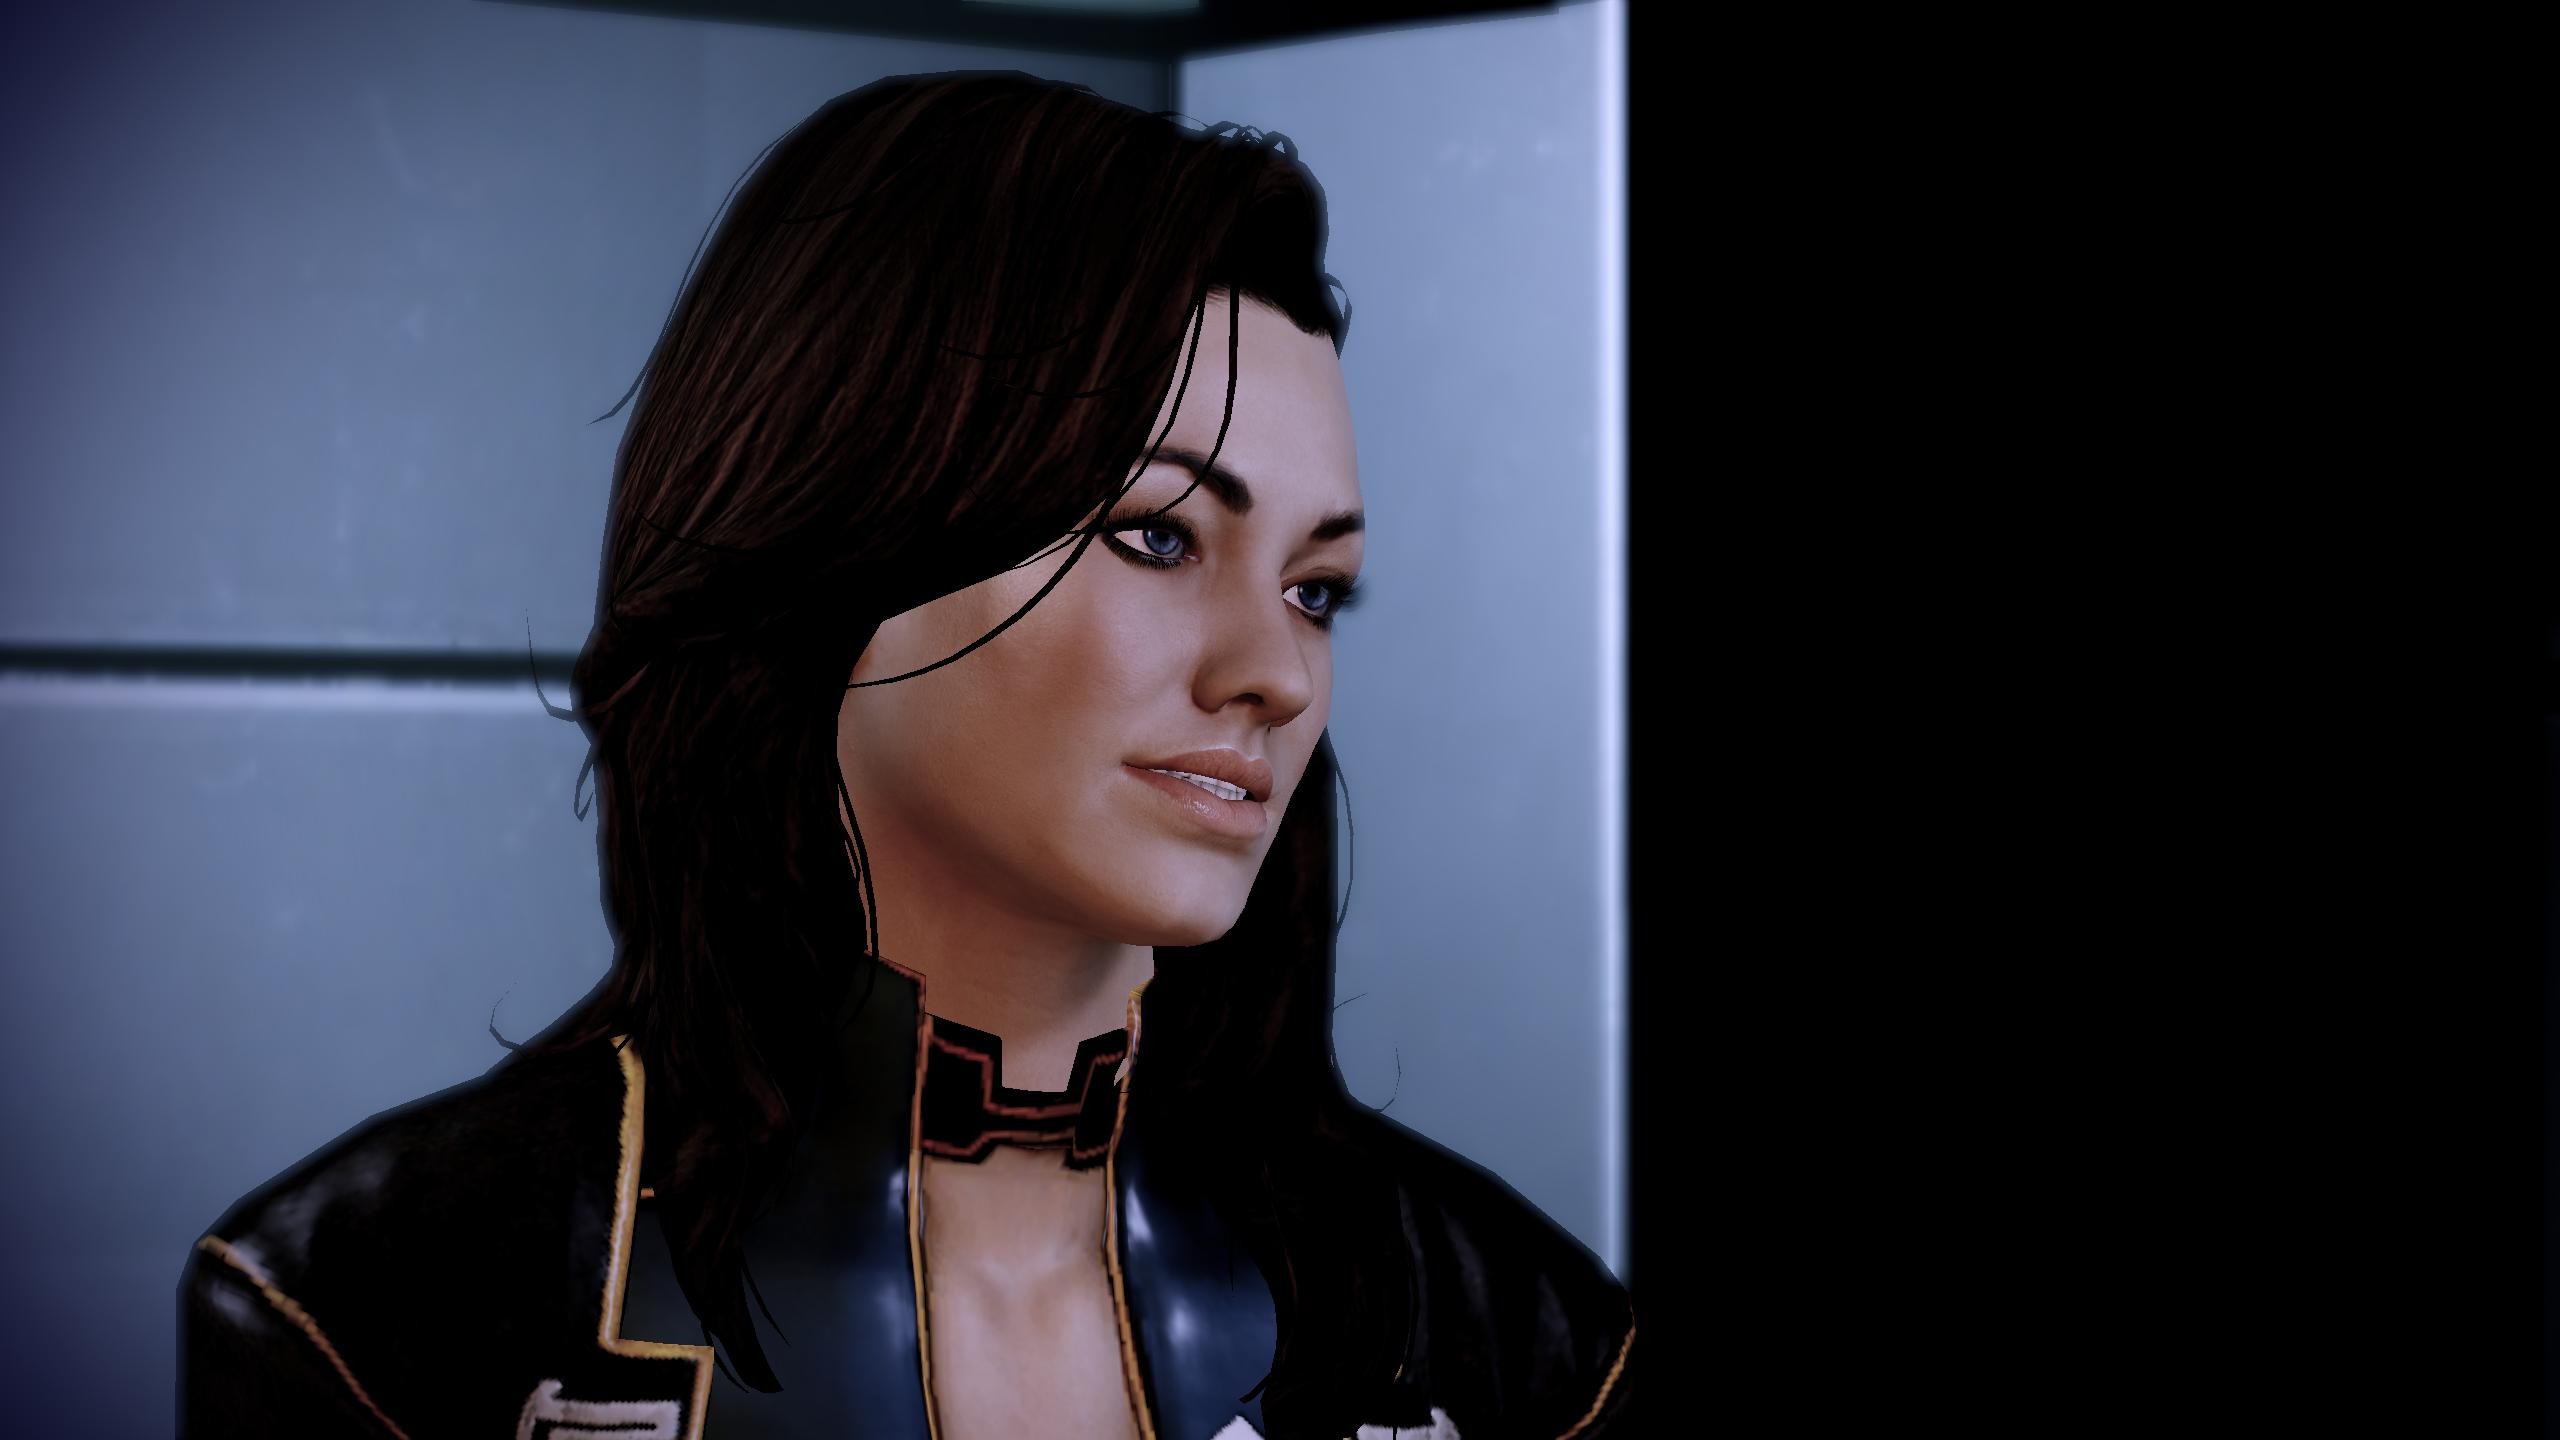 видеоигры, Mass Effect, скриншоты, Миранда Лоусон, BioWare, Масс Эффект 2 - обои на рабочий стол